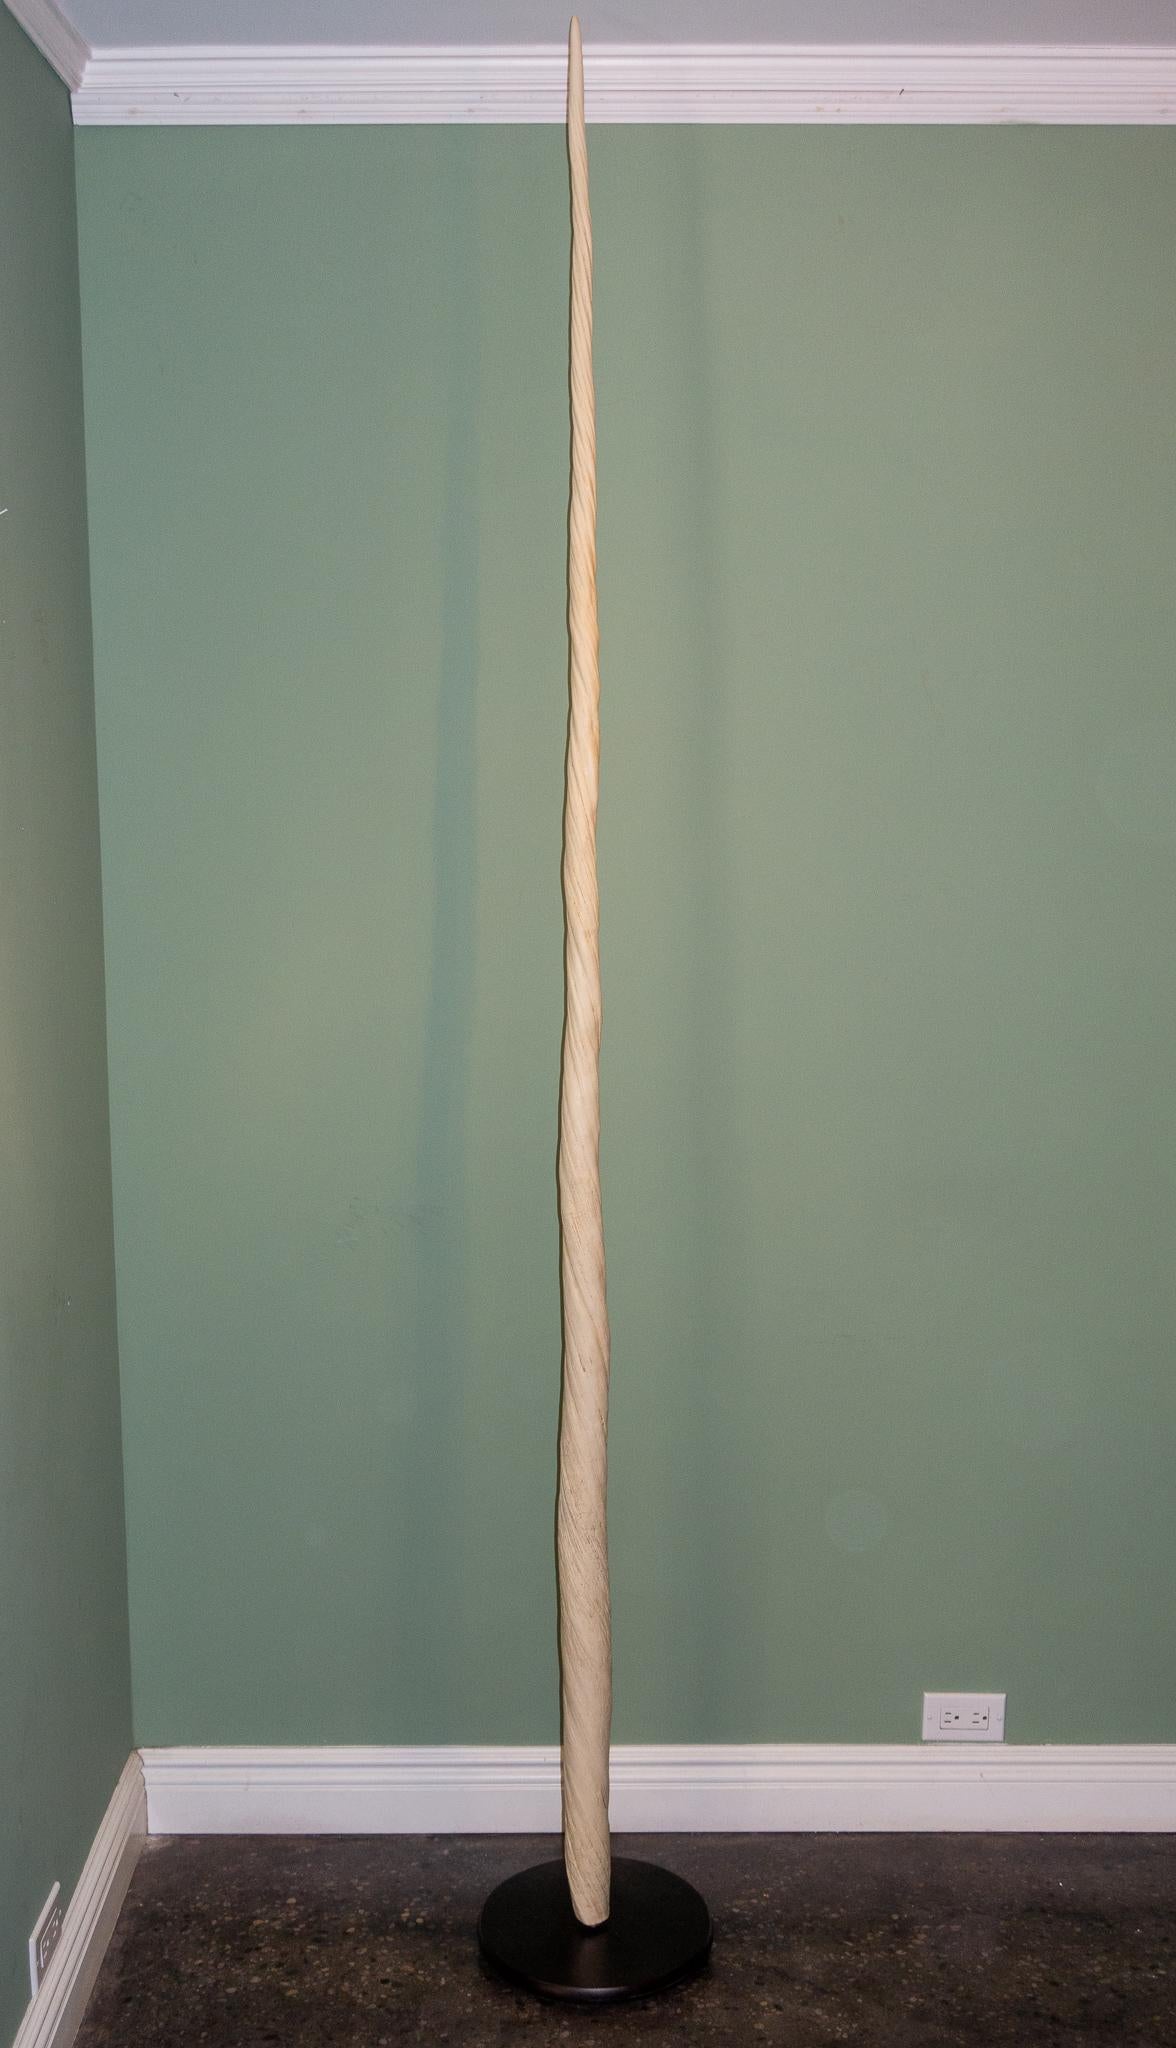 Diese Narwal-Stoßzahn-Replik misst beeindruckende 90 Zentimeter in der Länge, was sie zu einem auffälligen und auffälligen Dekorationsstück macht. Der Stoßzahn selbst ist sehr detailliert und so gefertigt, dass er dem echten Stoßzahn mit seiner